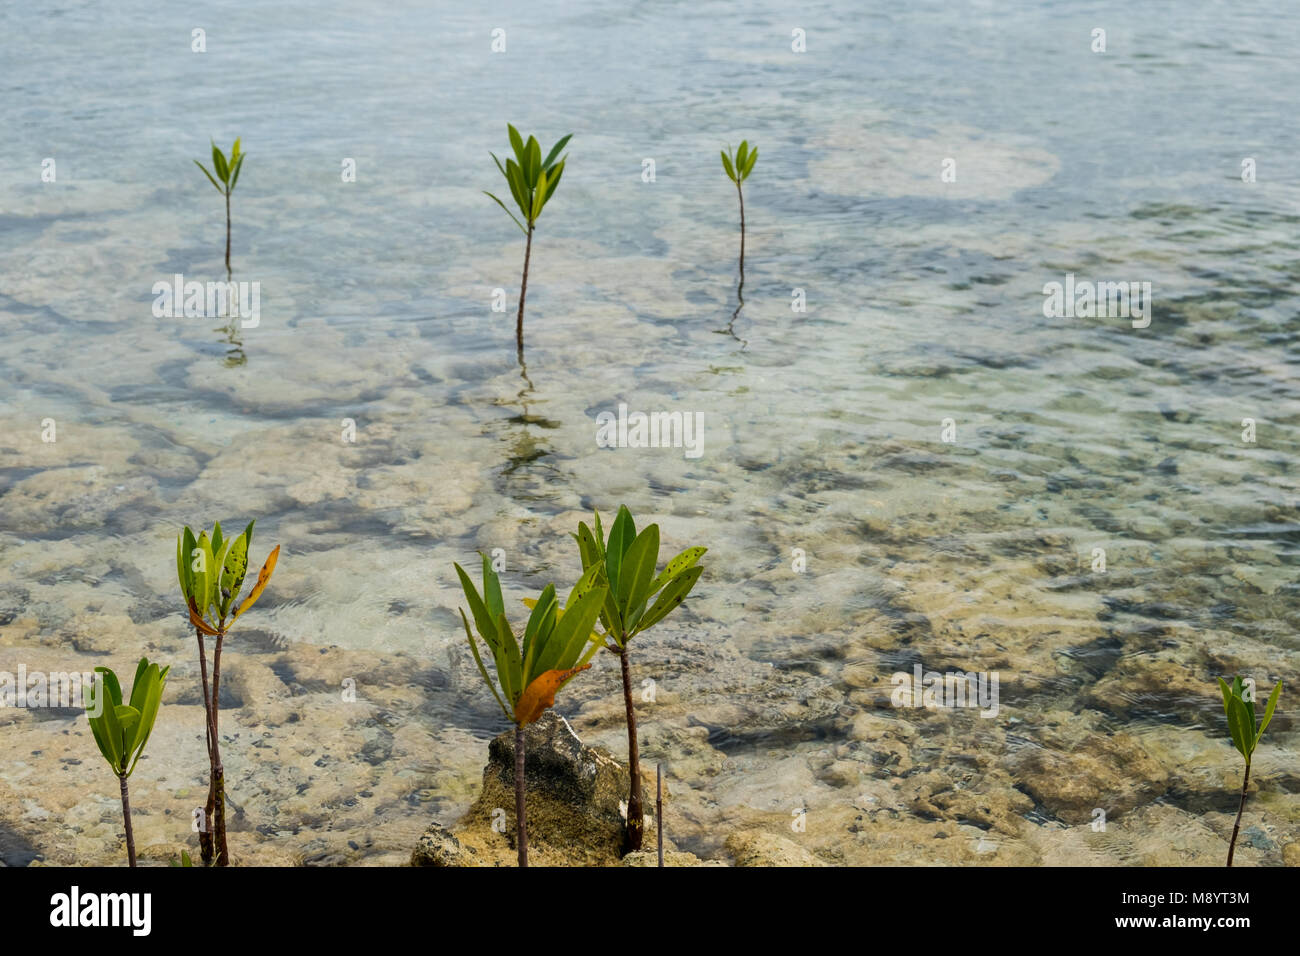 Les jeunes arbres de la mangrove en eau peu profonde - Banque D'Images